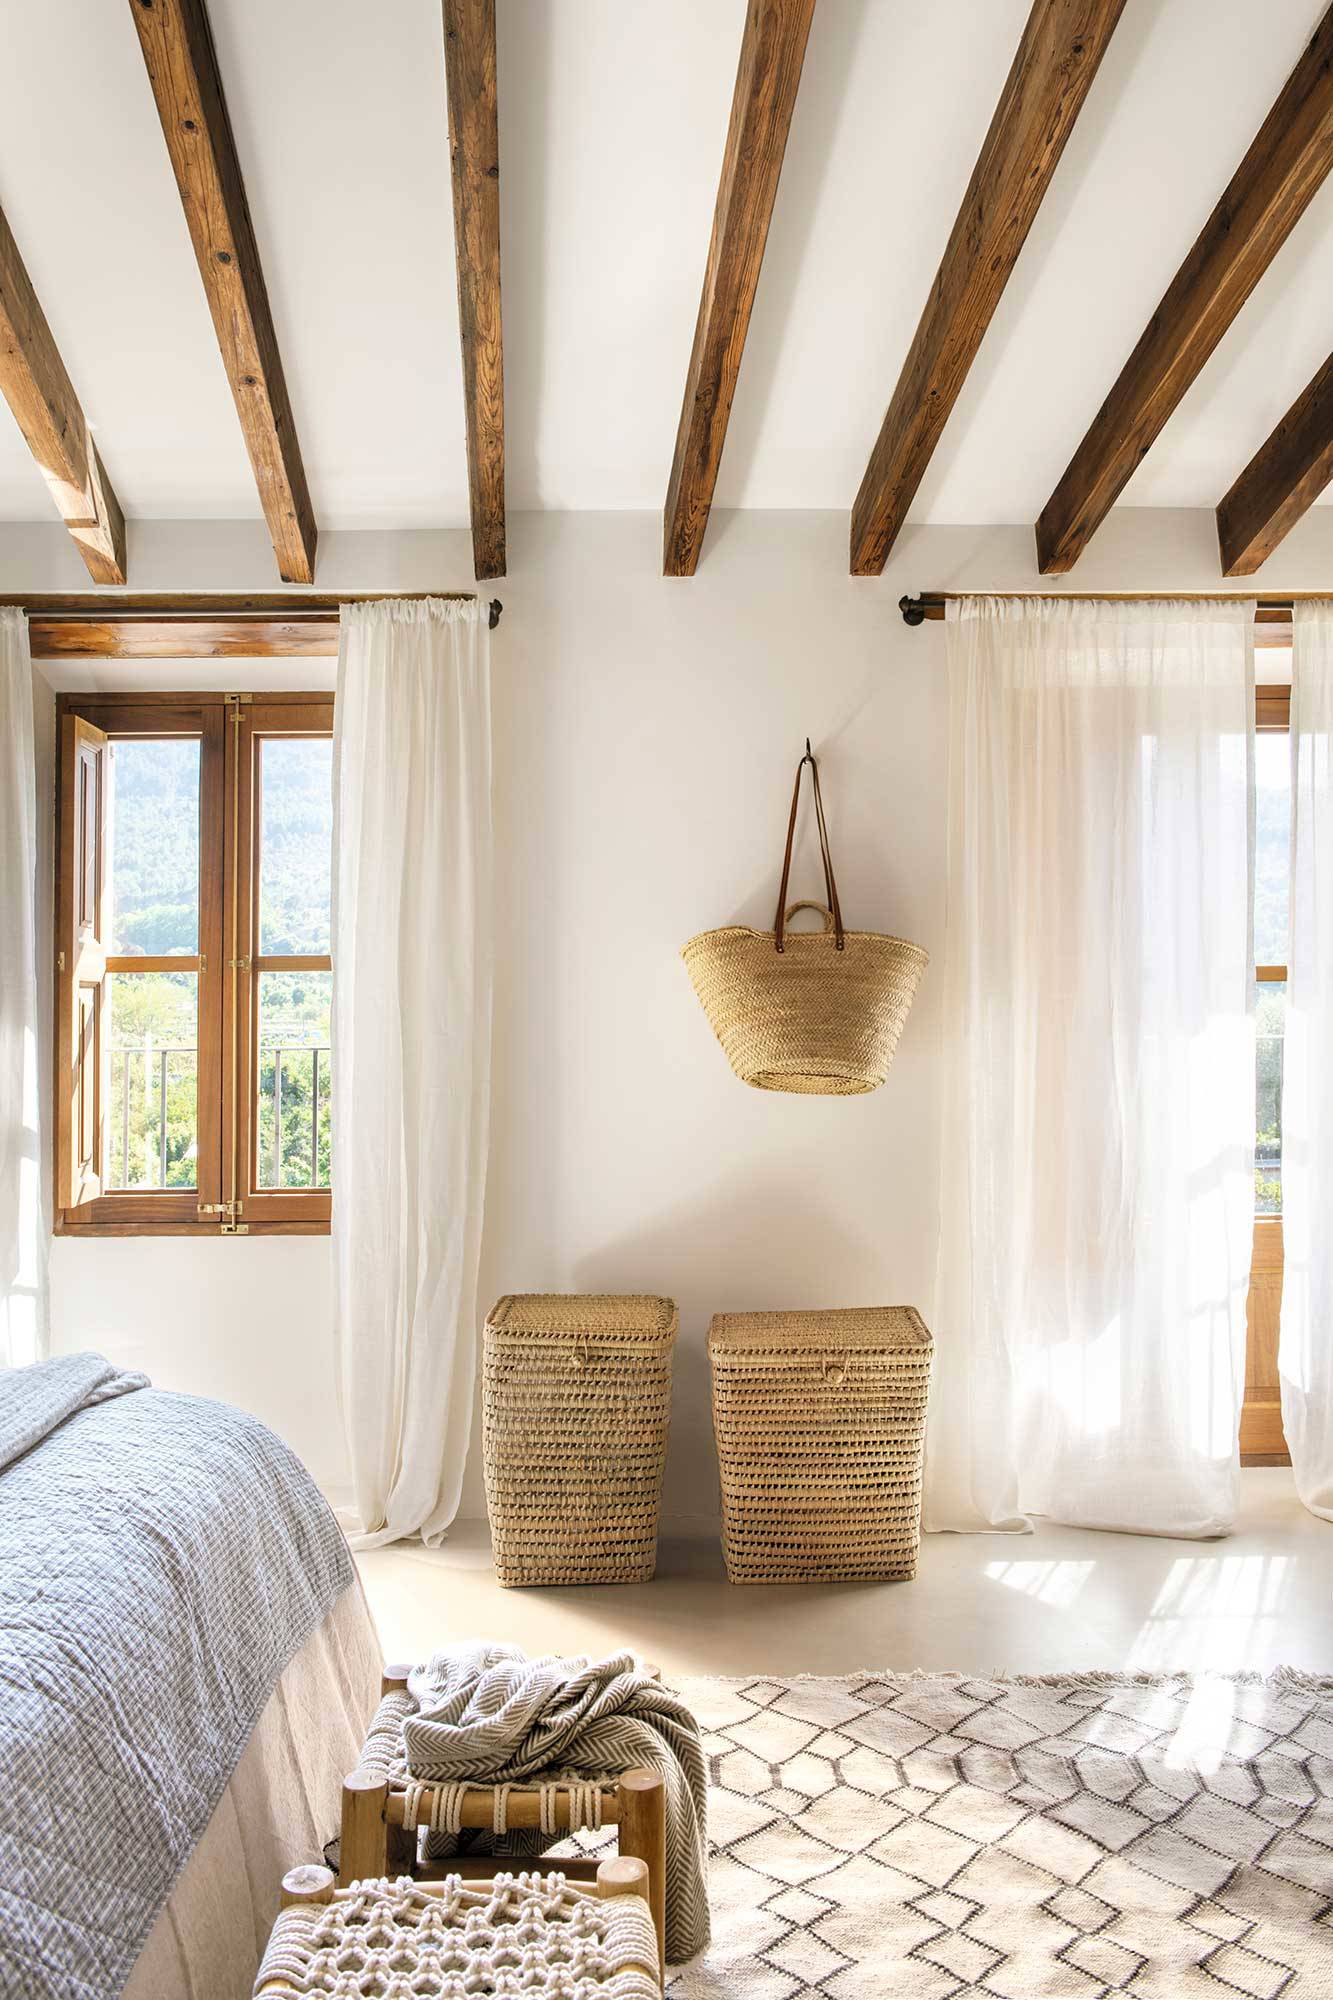 Dormitorio ru´stico con cortinas blancas